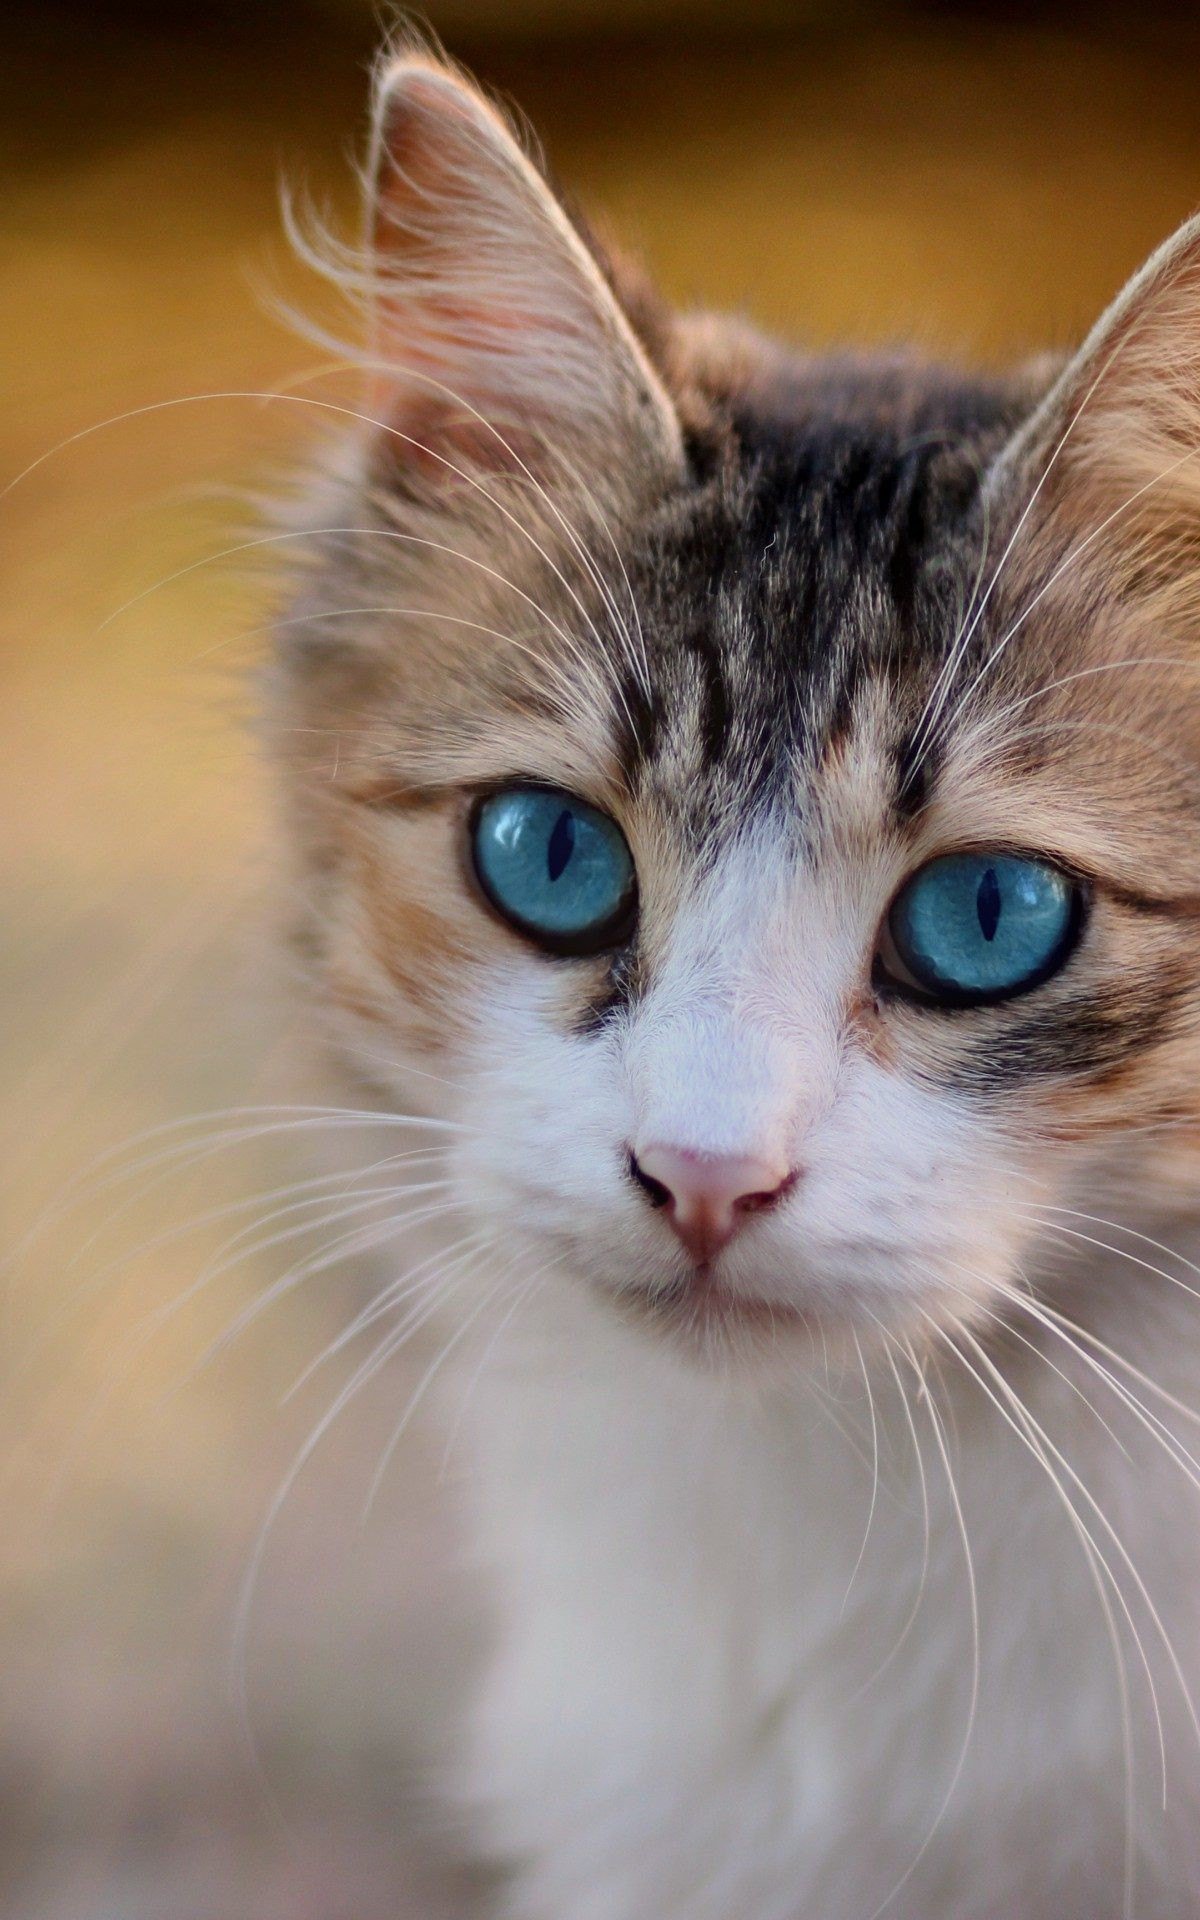 Conheça as principais curiosidades sobre os gatos!